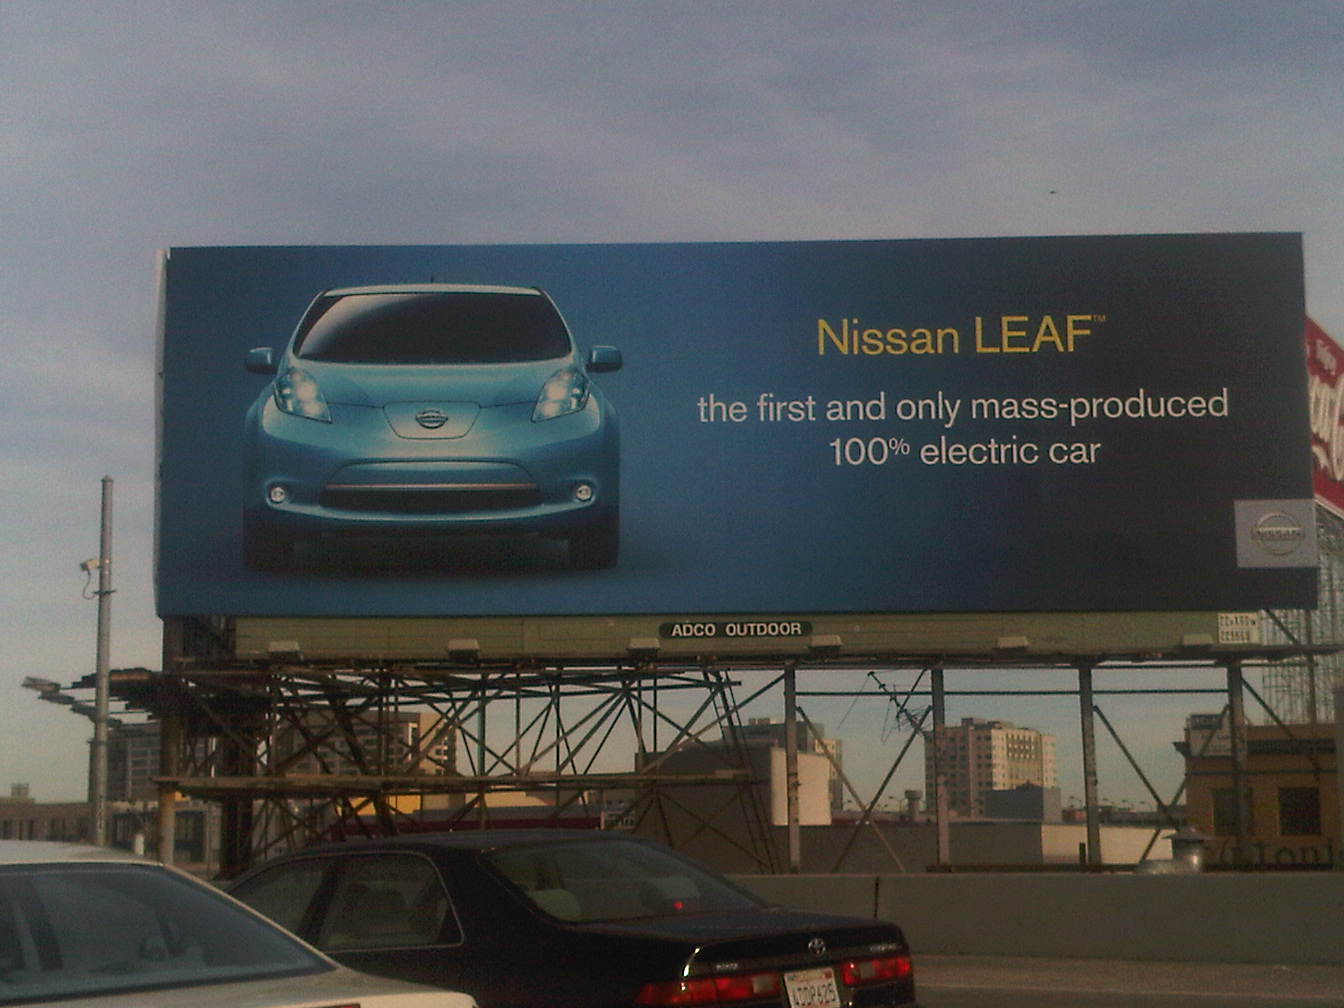 Nissan leaf magazine ad #1